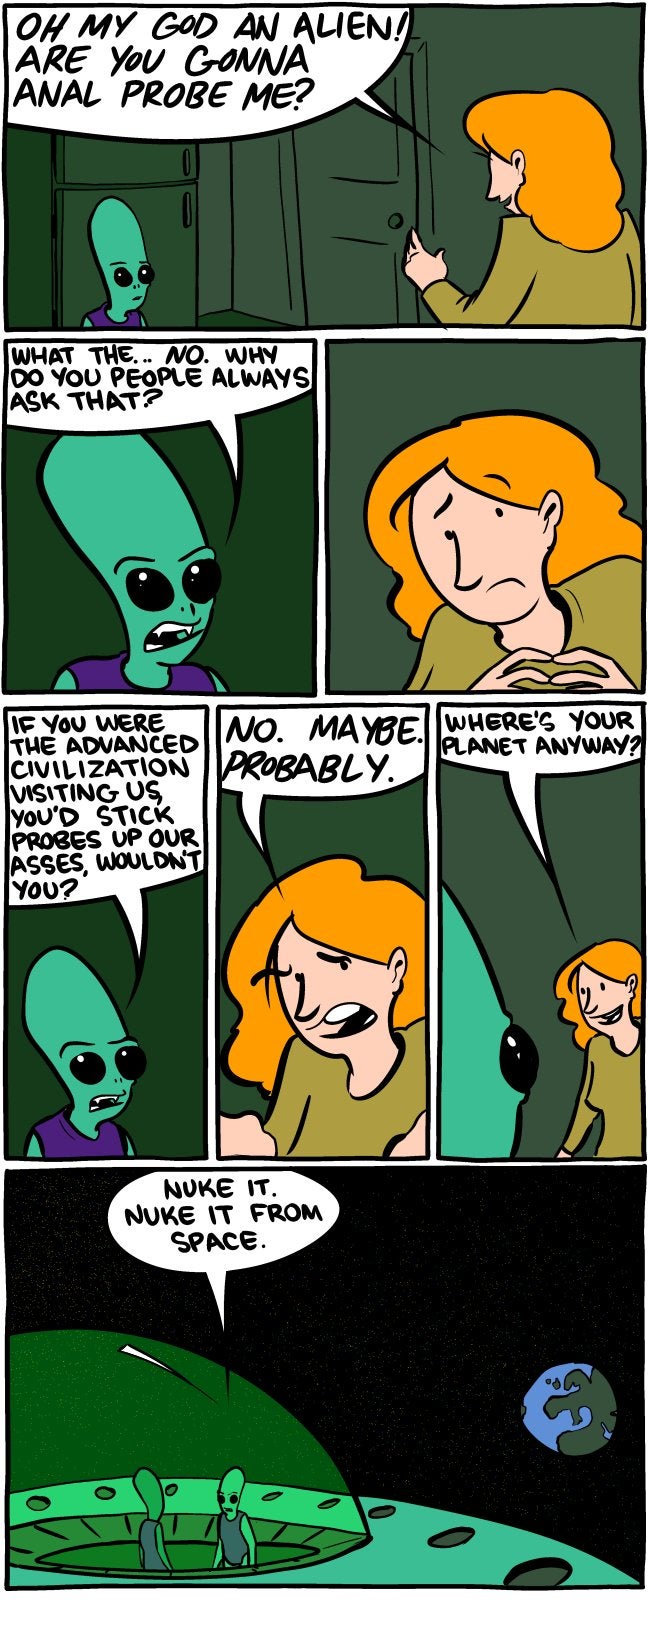 Alien anal probe